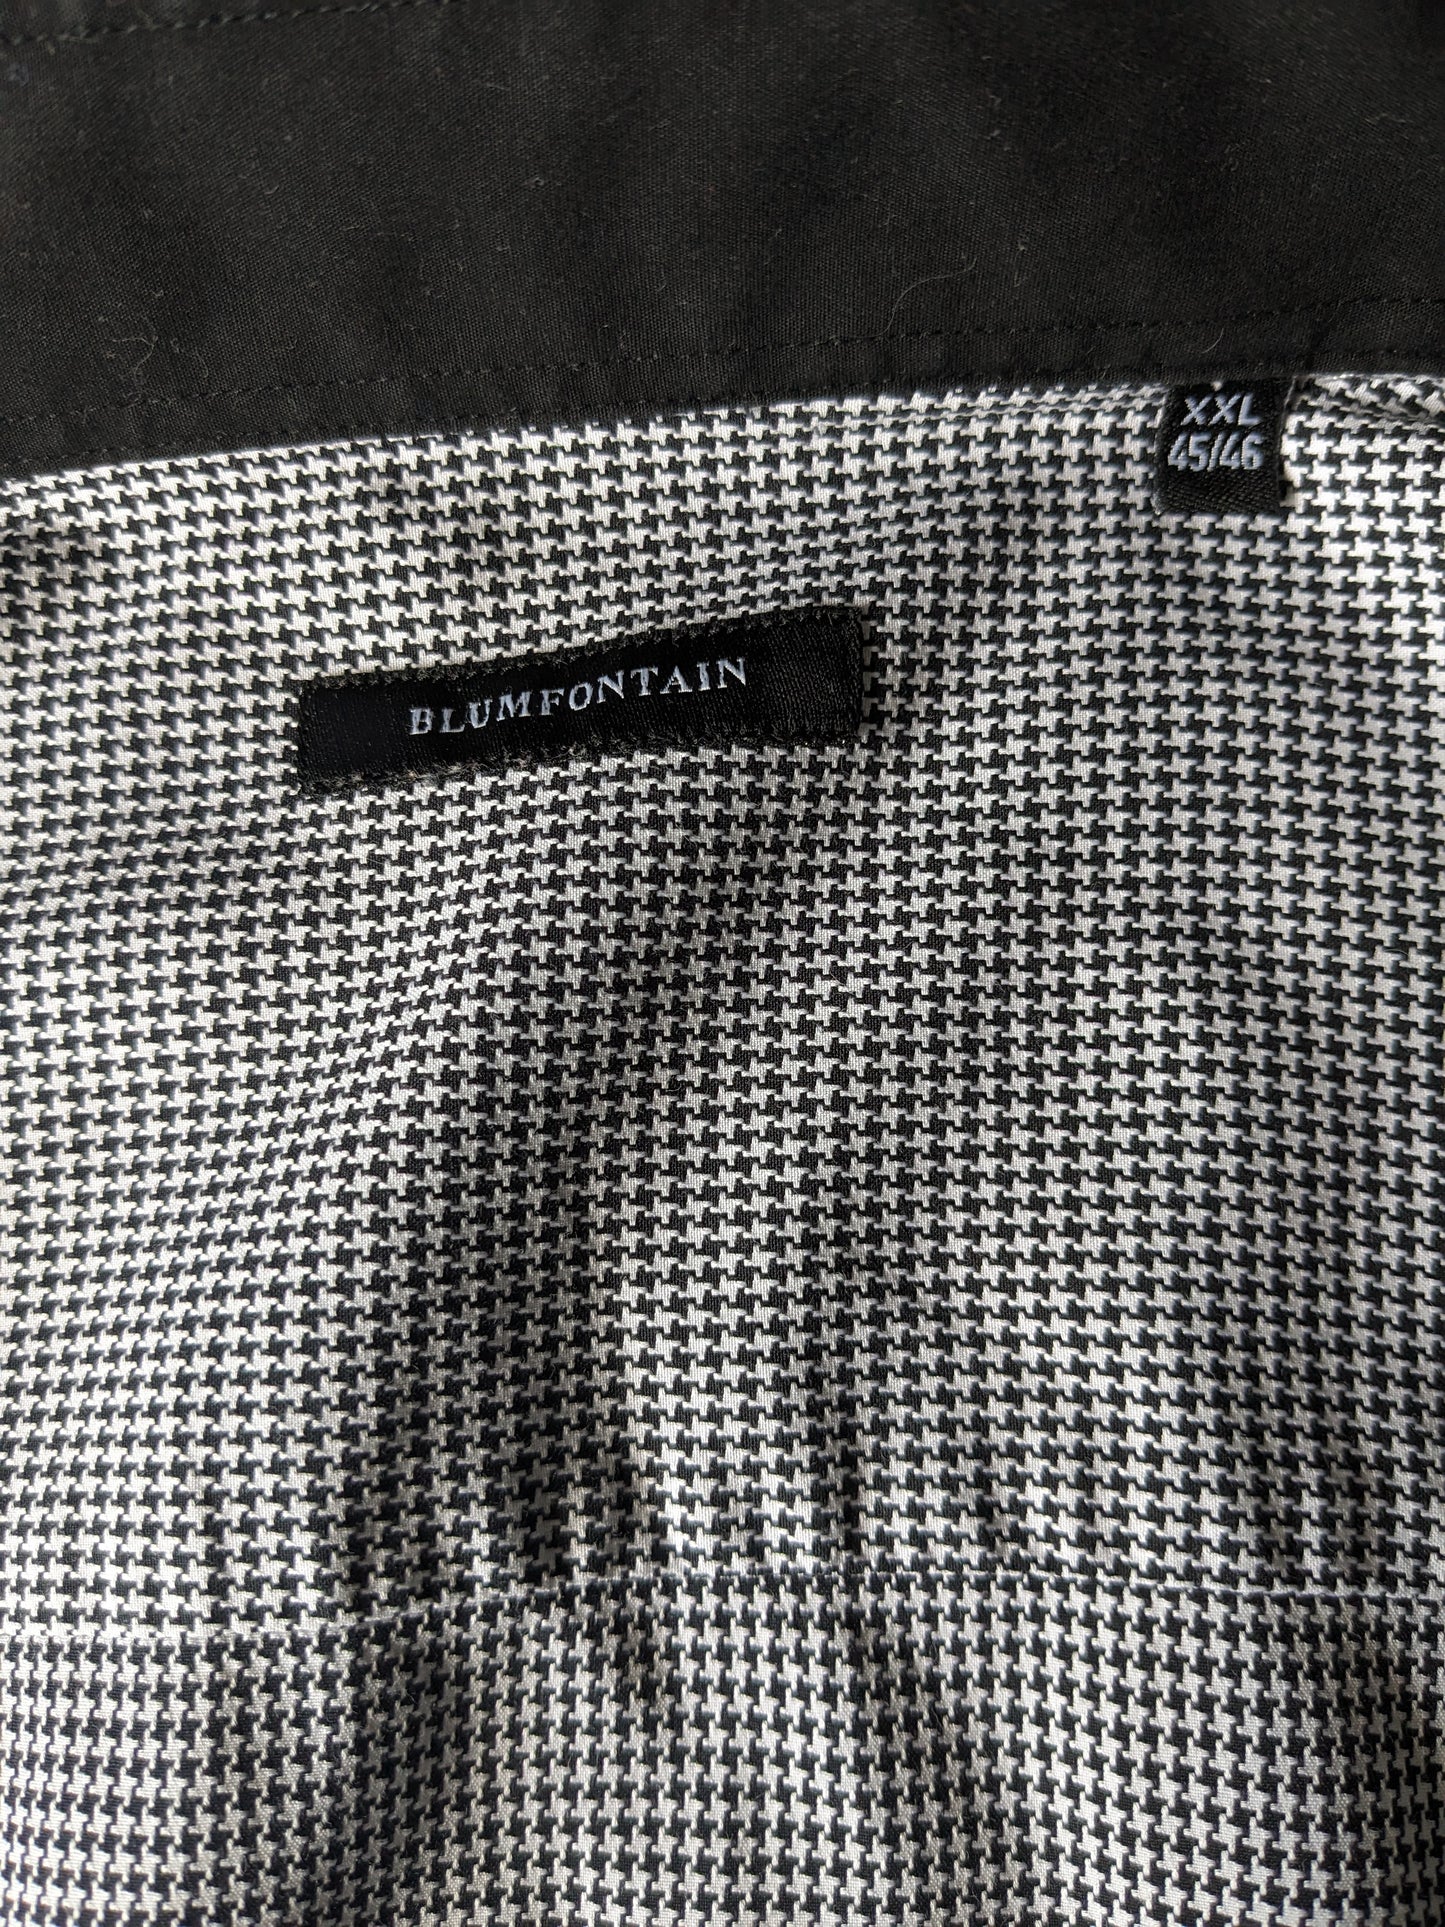 Blumfontain overhemd met elleboogstukken. Zwart Wit motief. Maat 2XL / XXL.